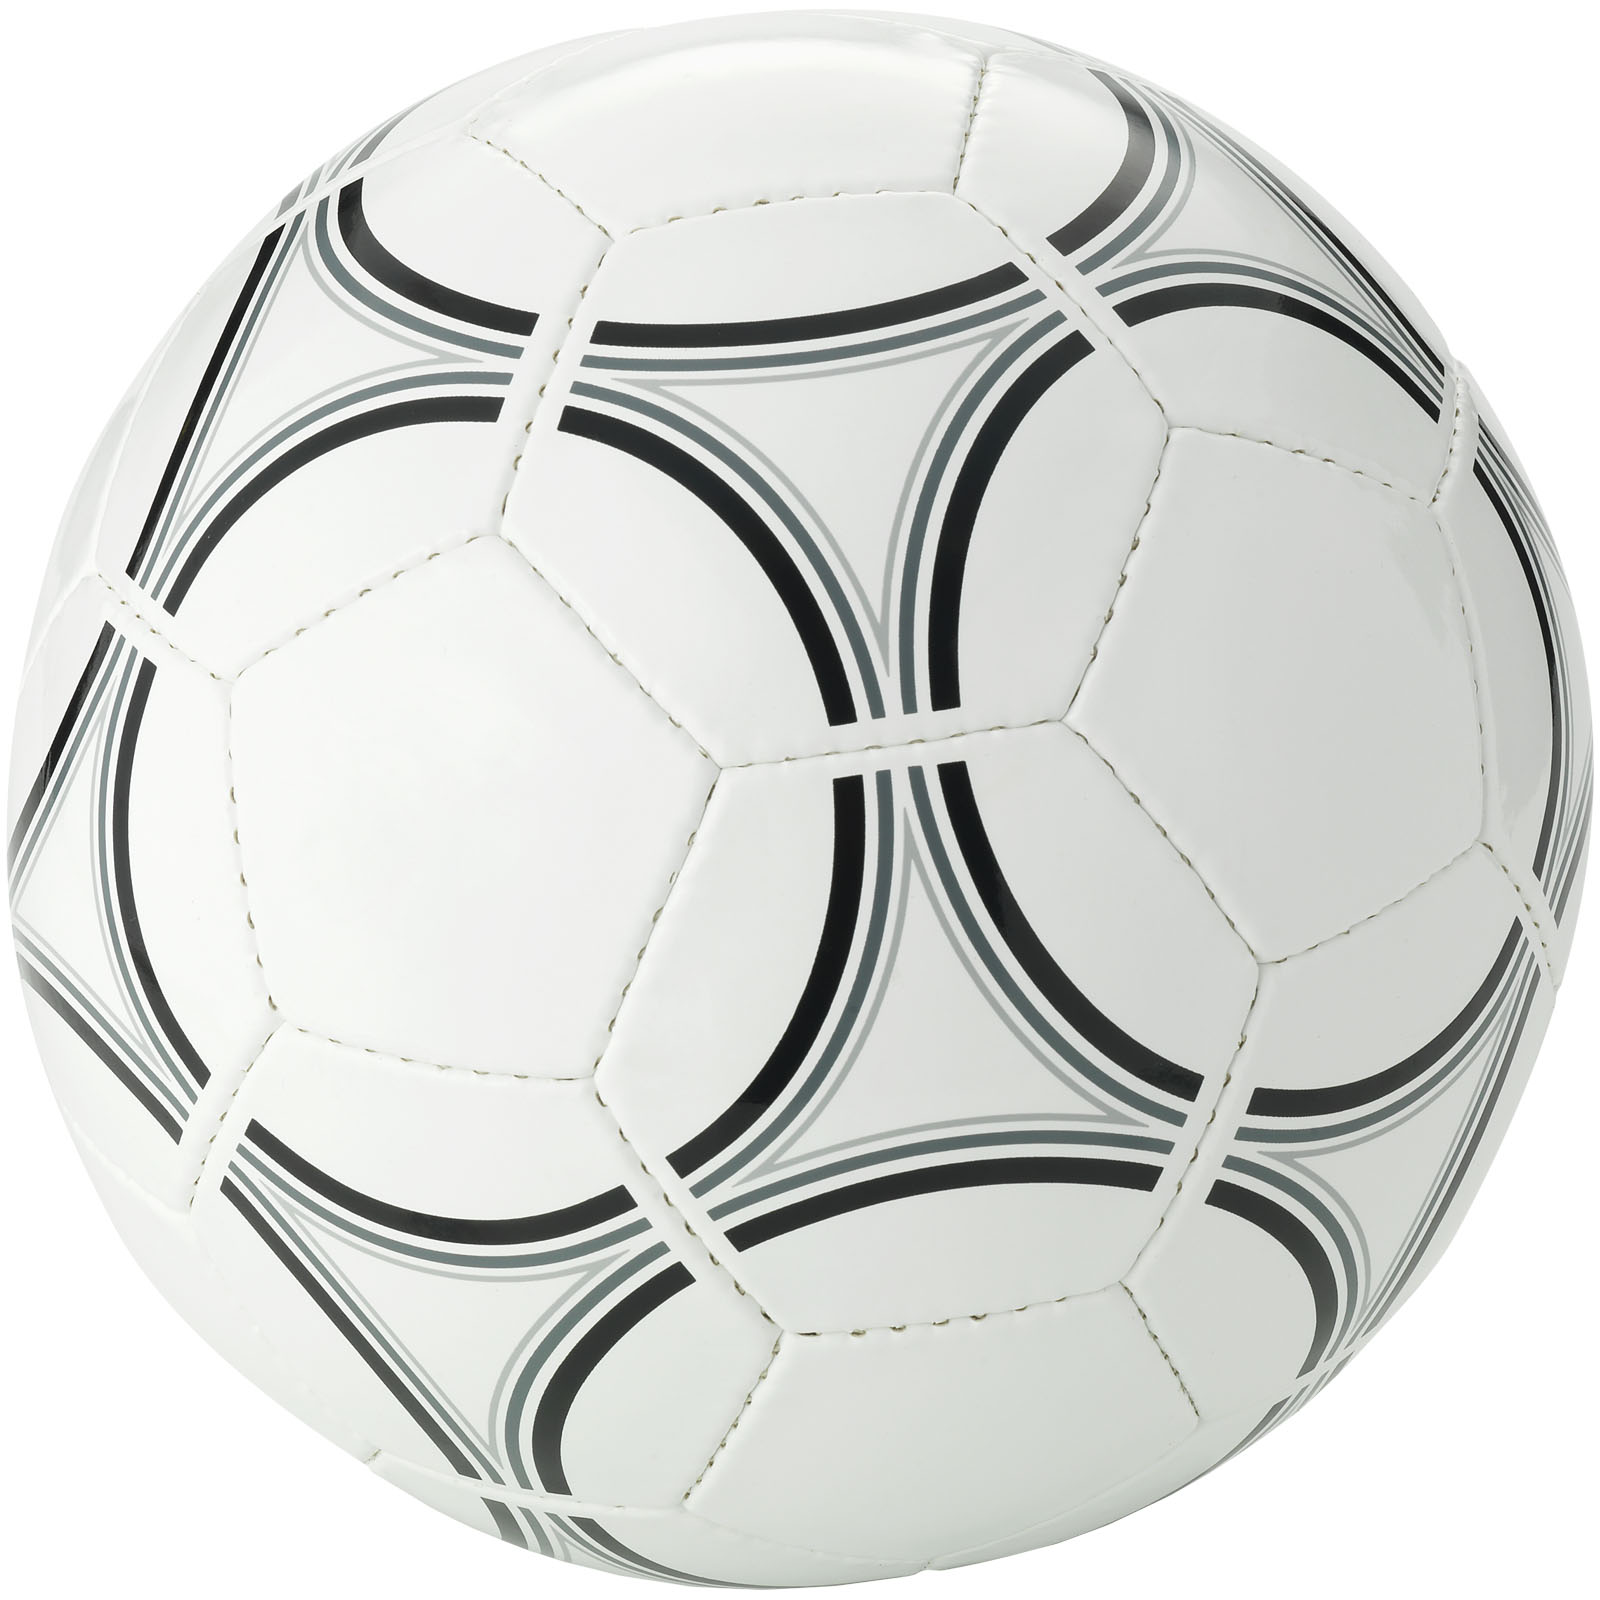 Ballon de football taille 5 personnalisé - Lilio